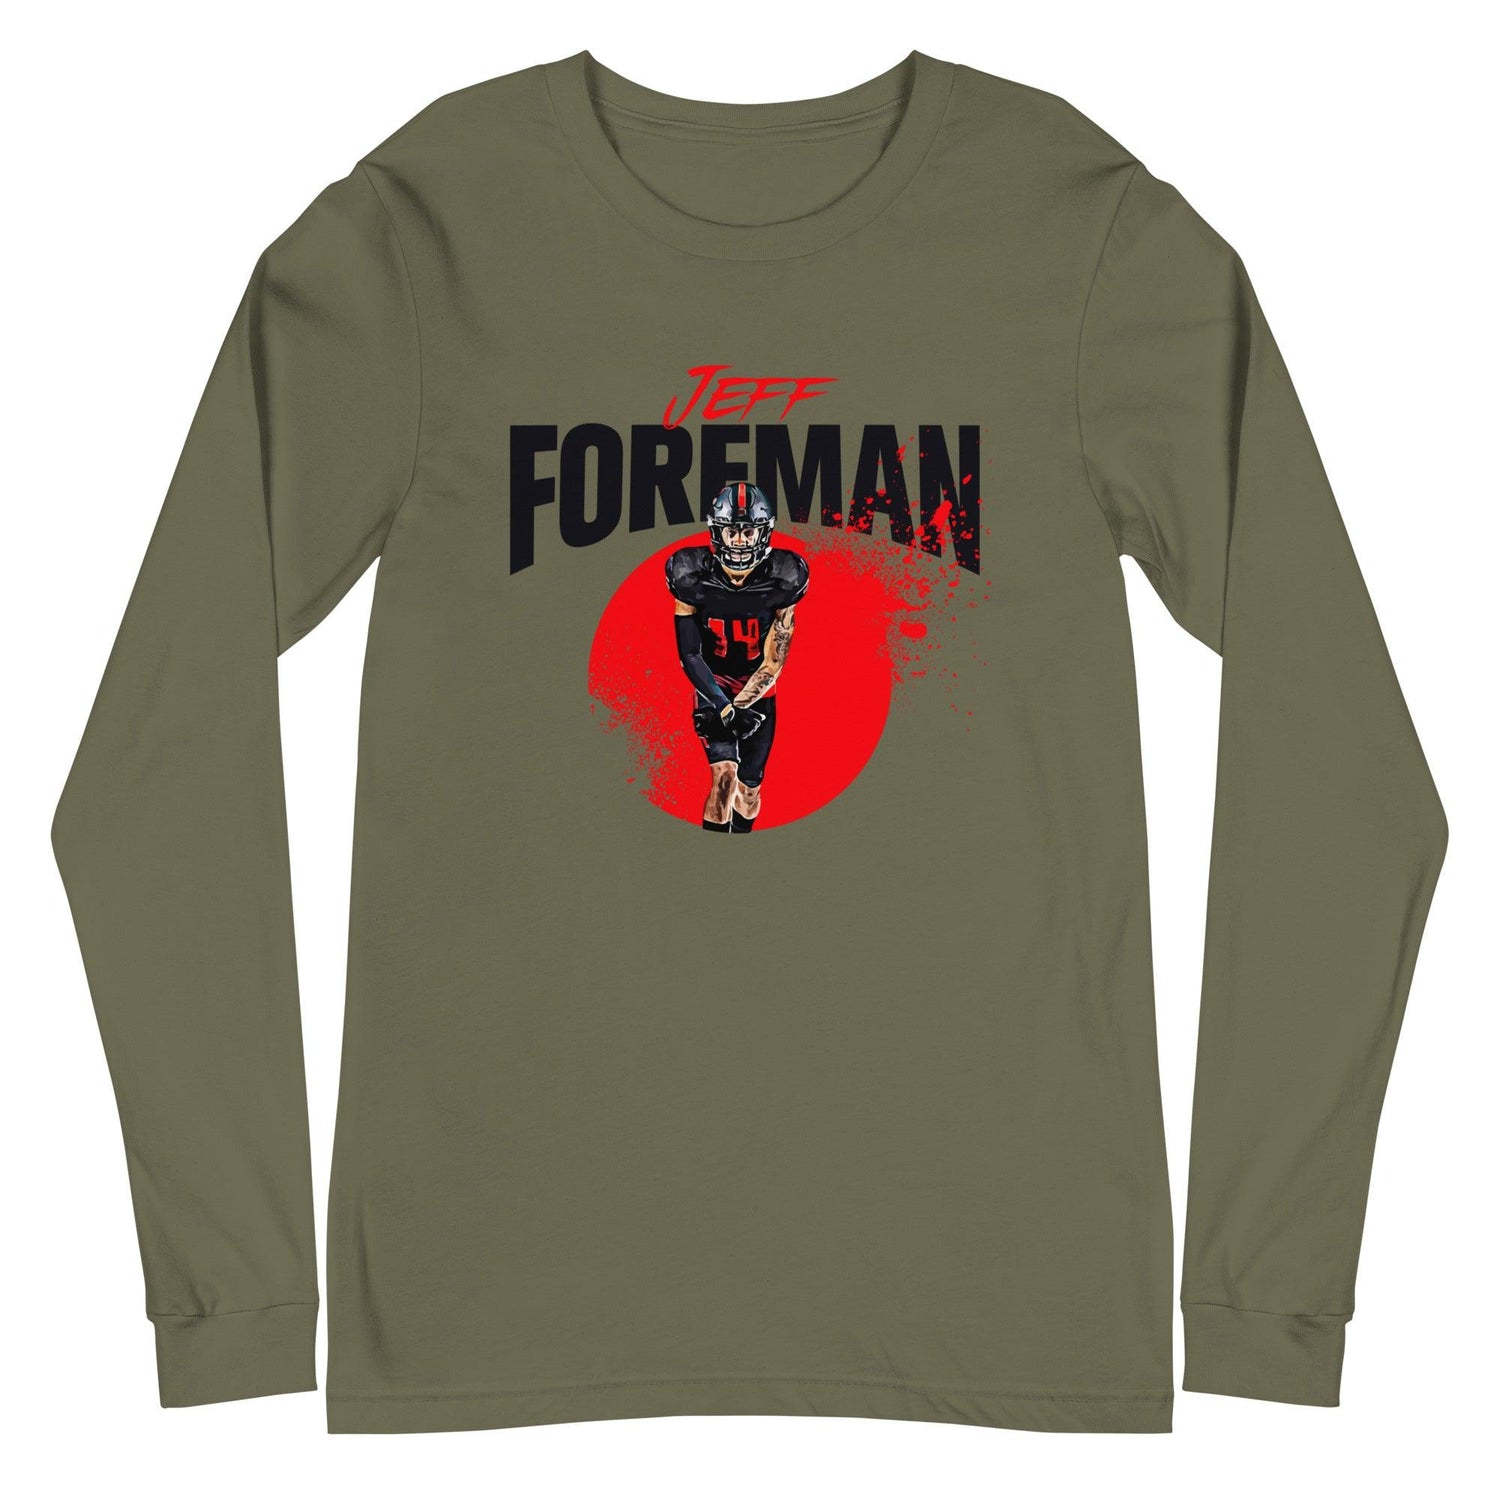 Jeff Foreman "Splash" Long Sleeve Tee - Fan Arch